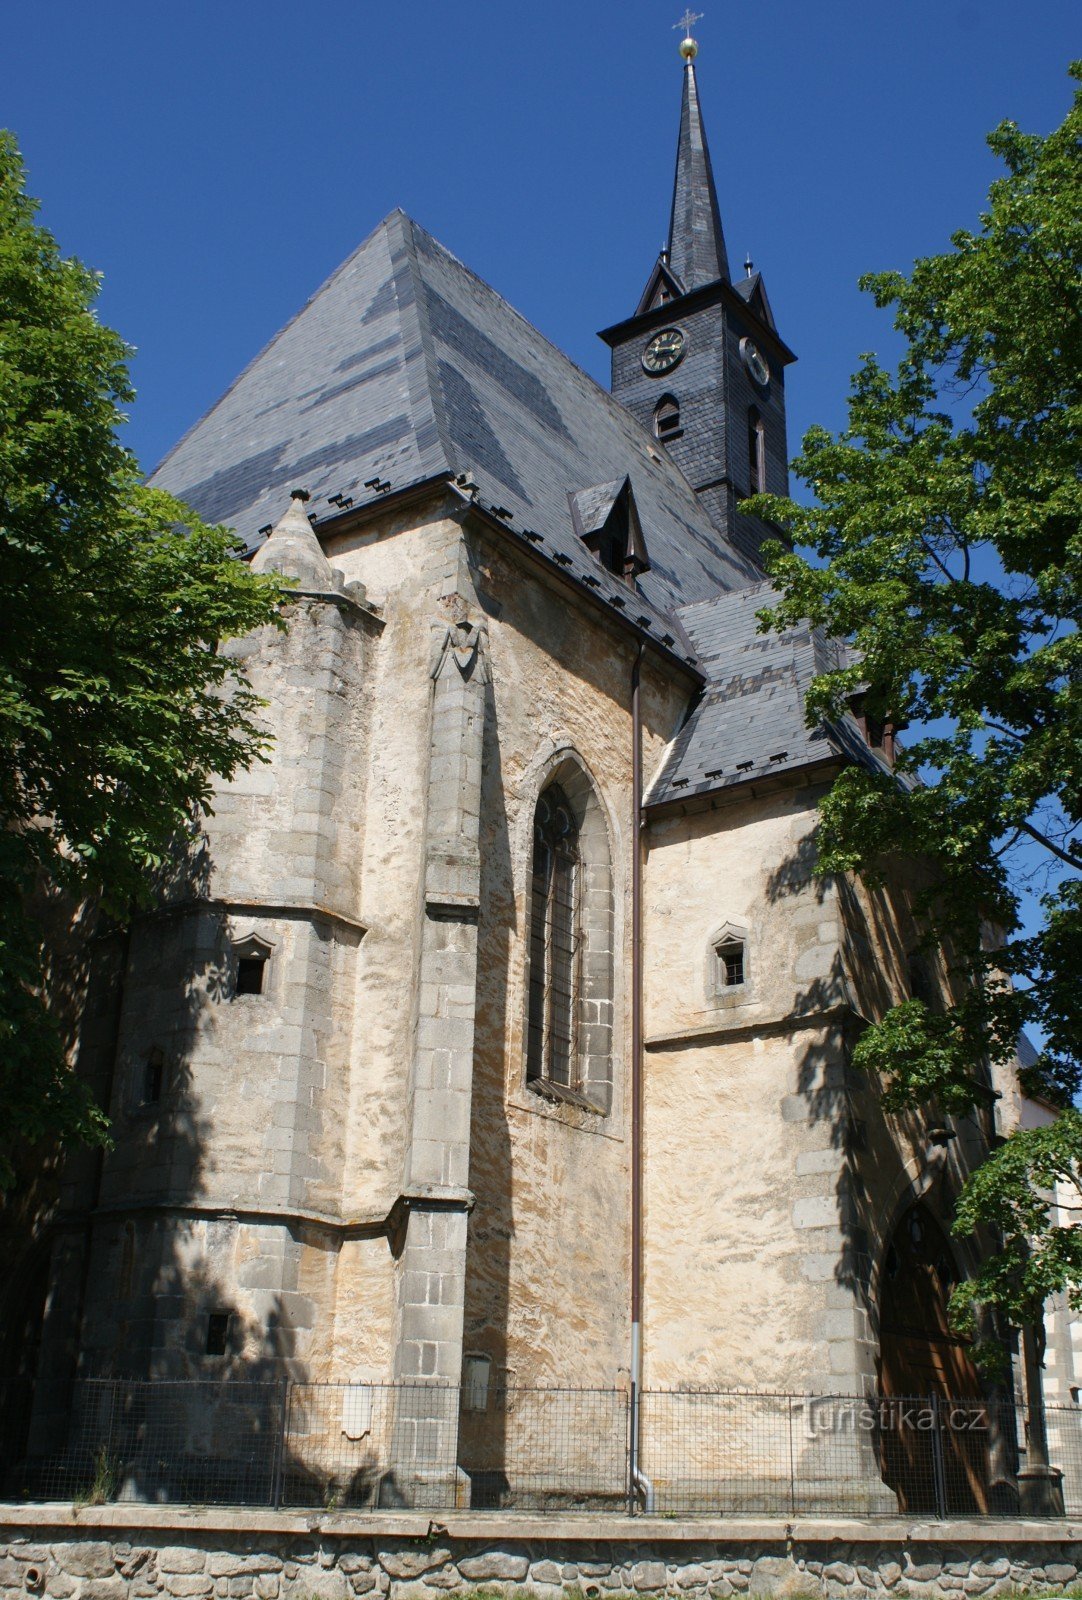 Dolní Dvořiště – church of St. Lily